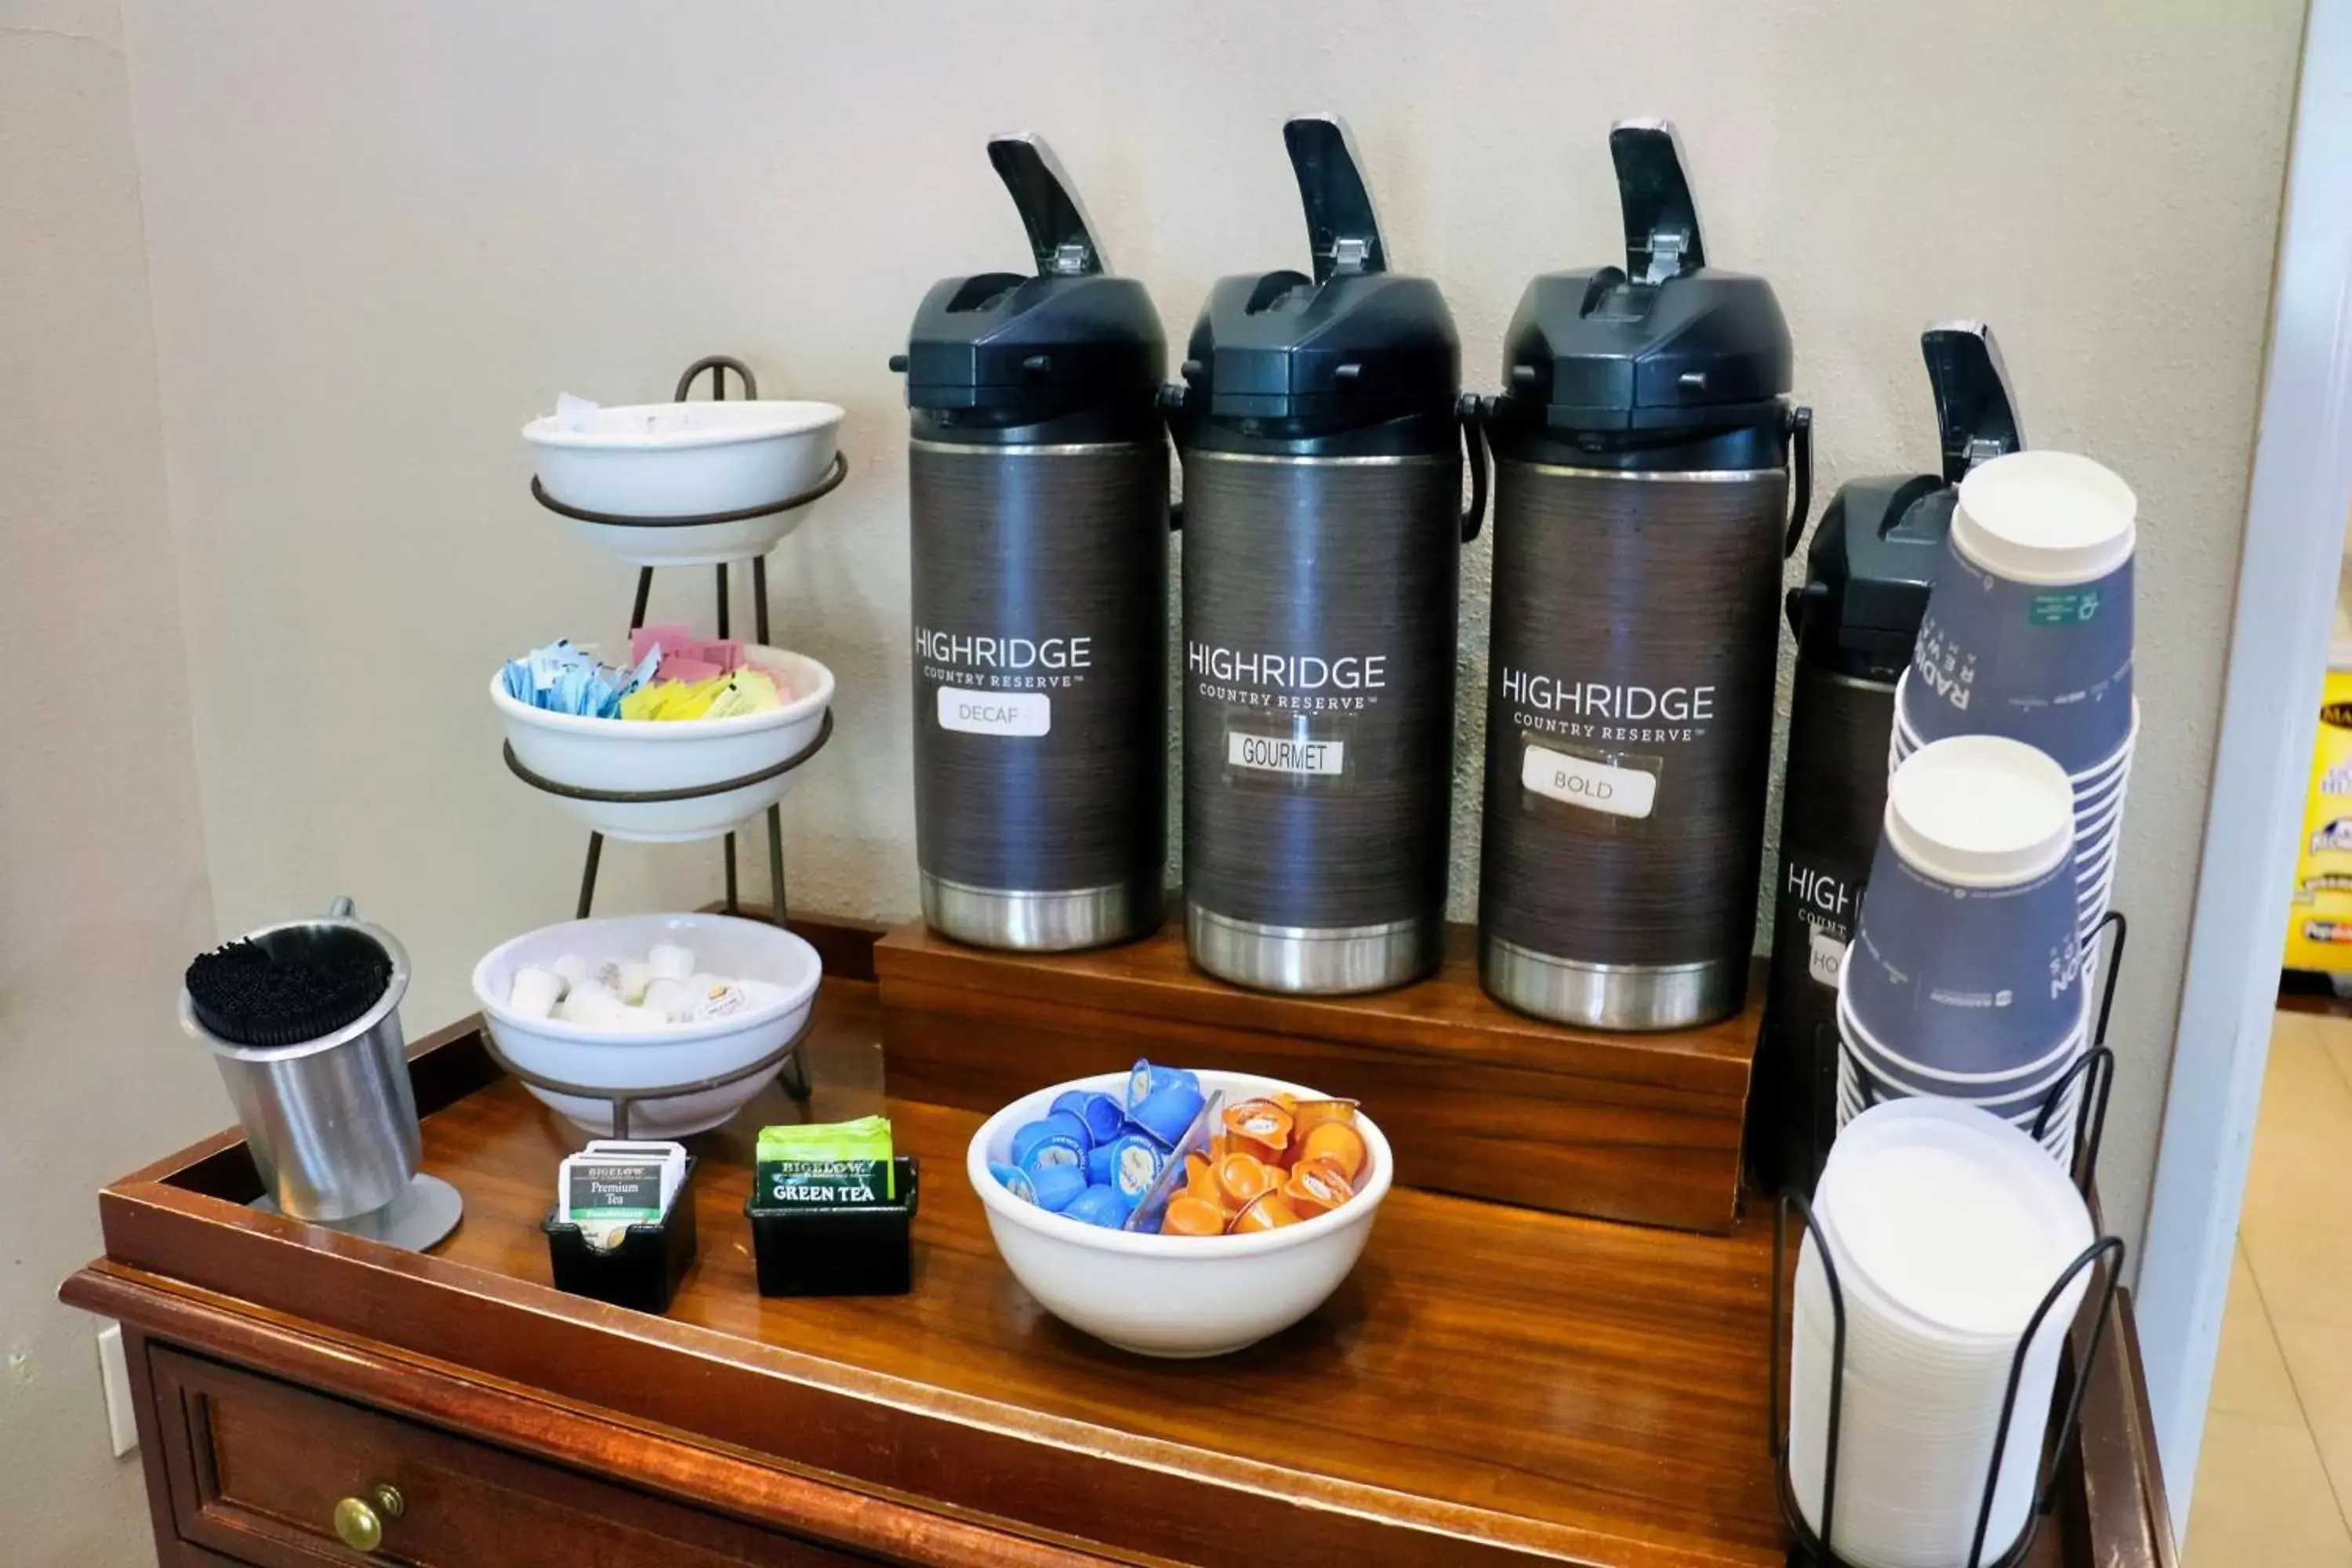 Coffee/tea facilities in Country Inn & Suites by Radisson, Savannah Gateway, GA